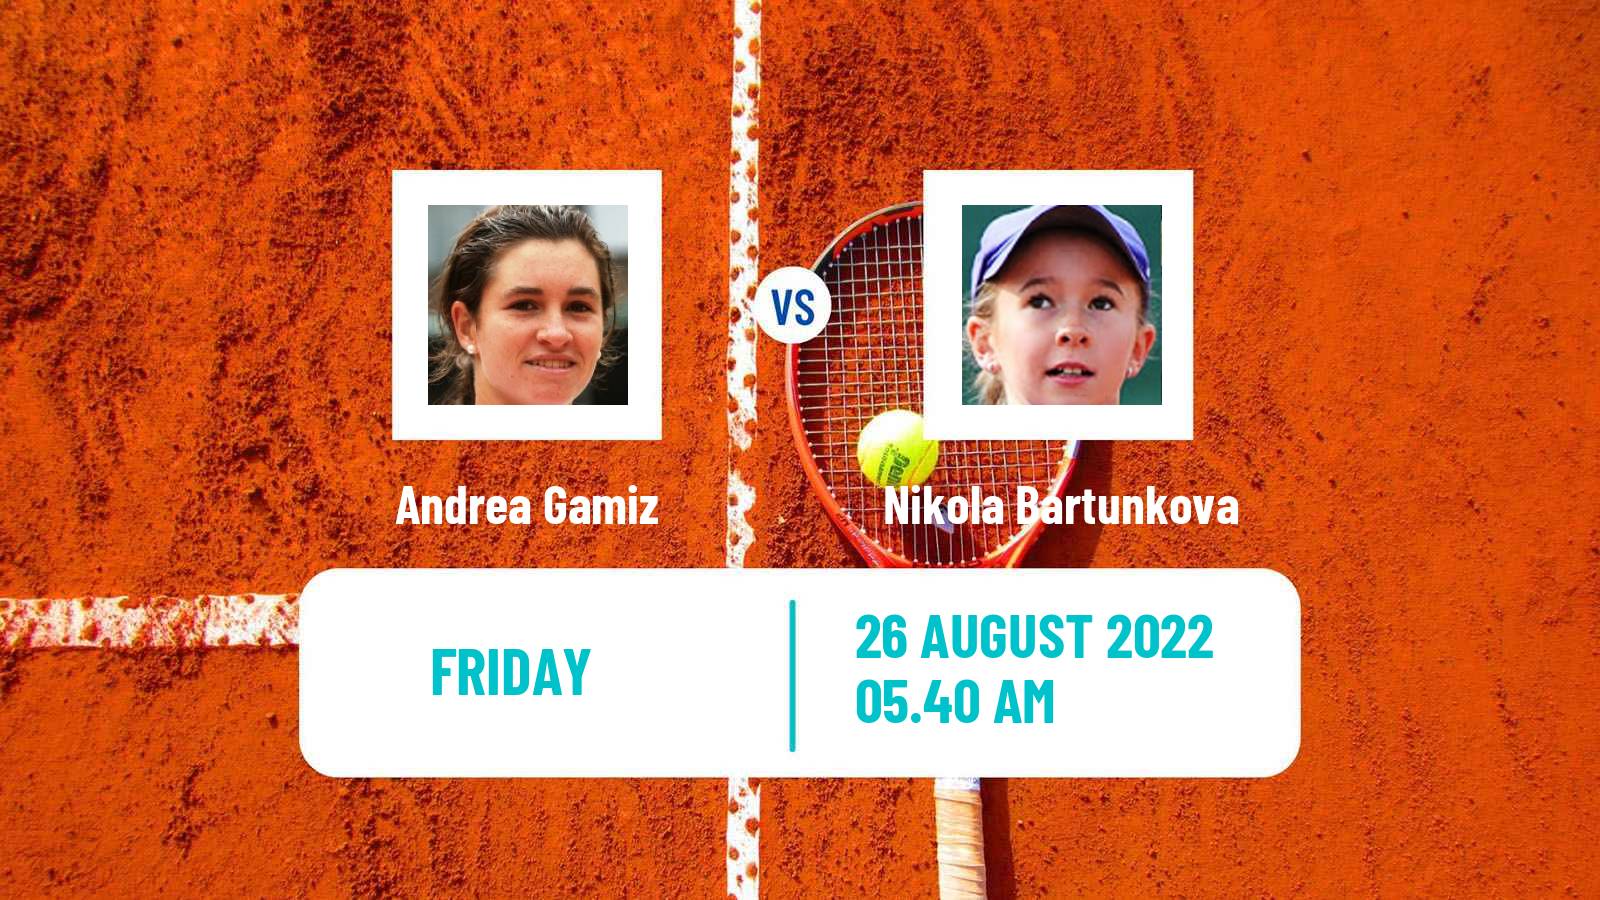 Tennis ITF Tournaments Andrea Gamiz - Nikola Bartunkova